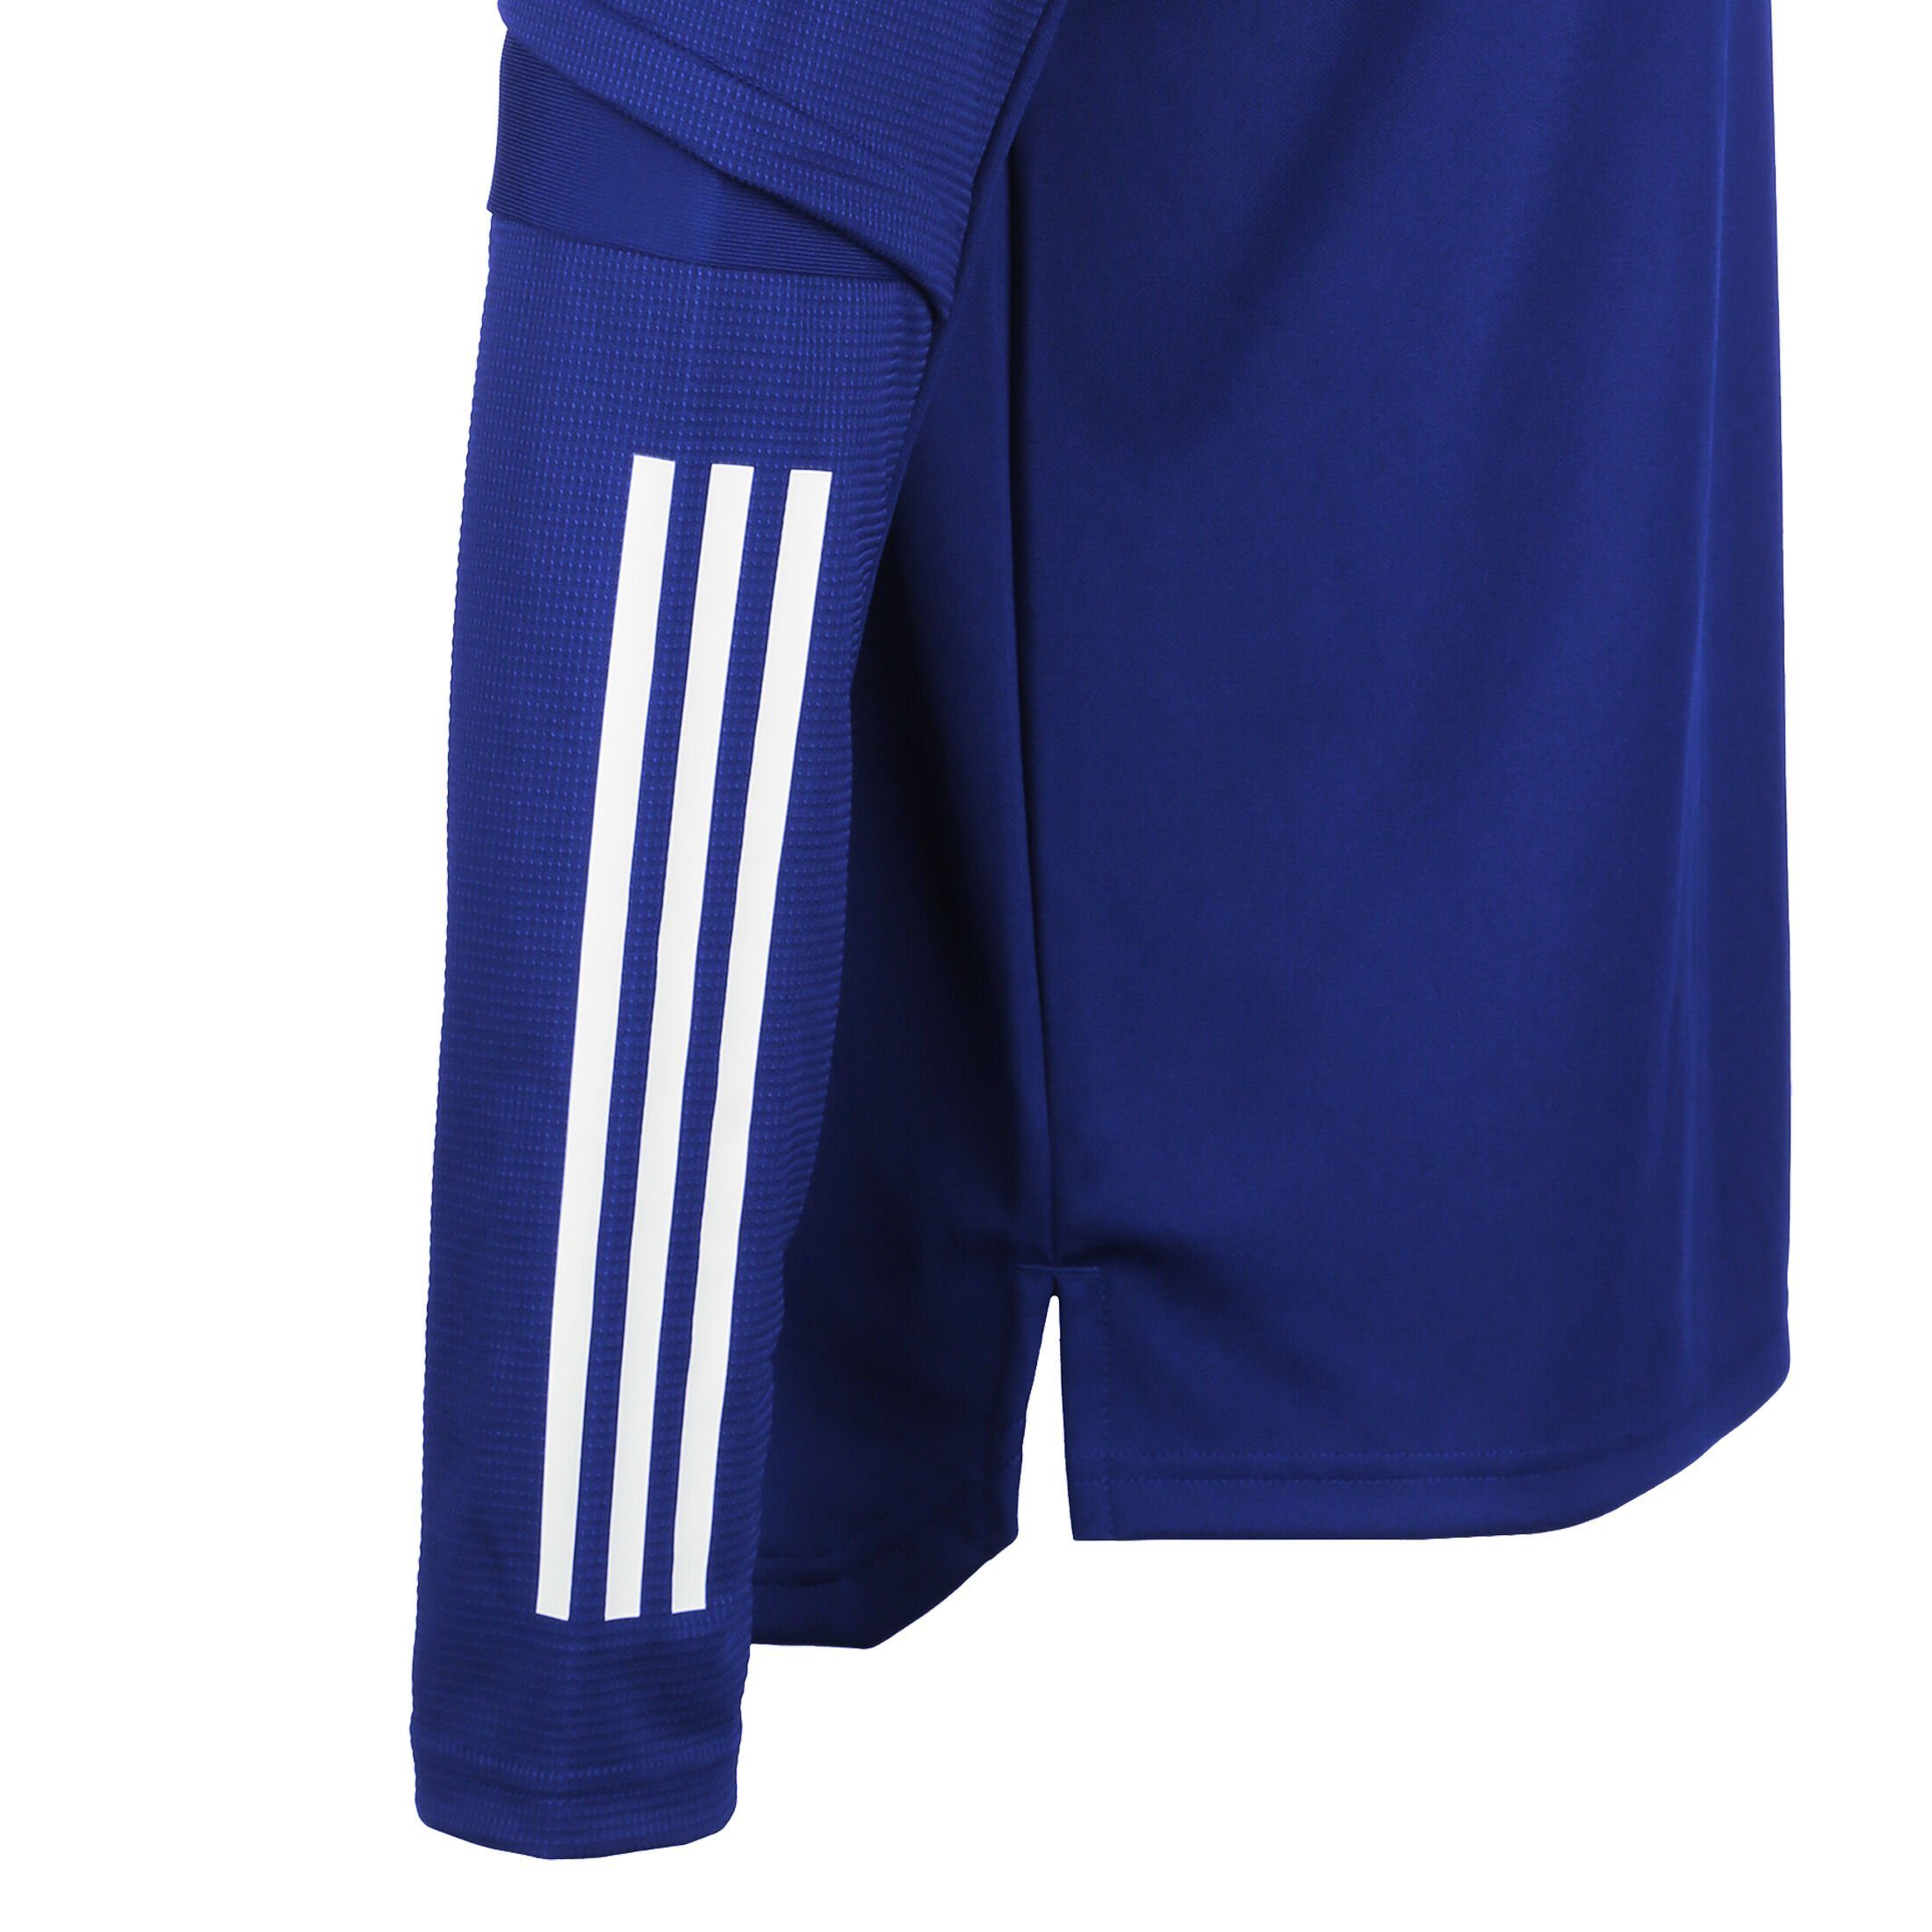 blau Herren Sweatshirt / 20 Condivo weiß adidas Performance Trainingssweat